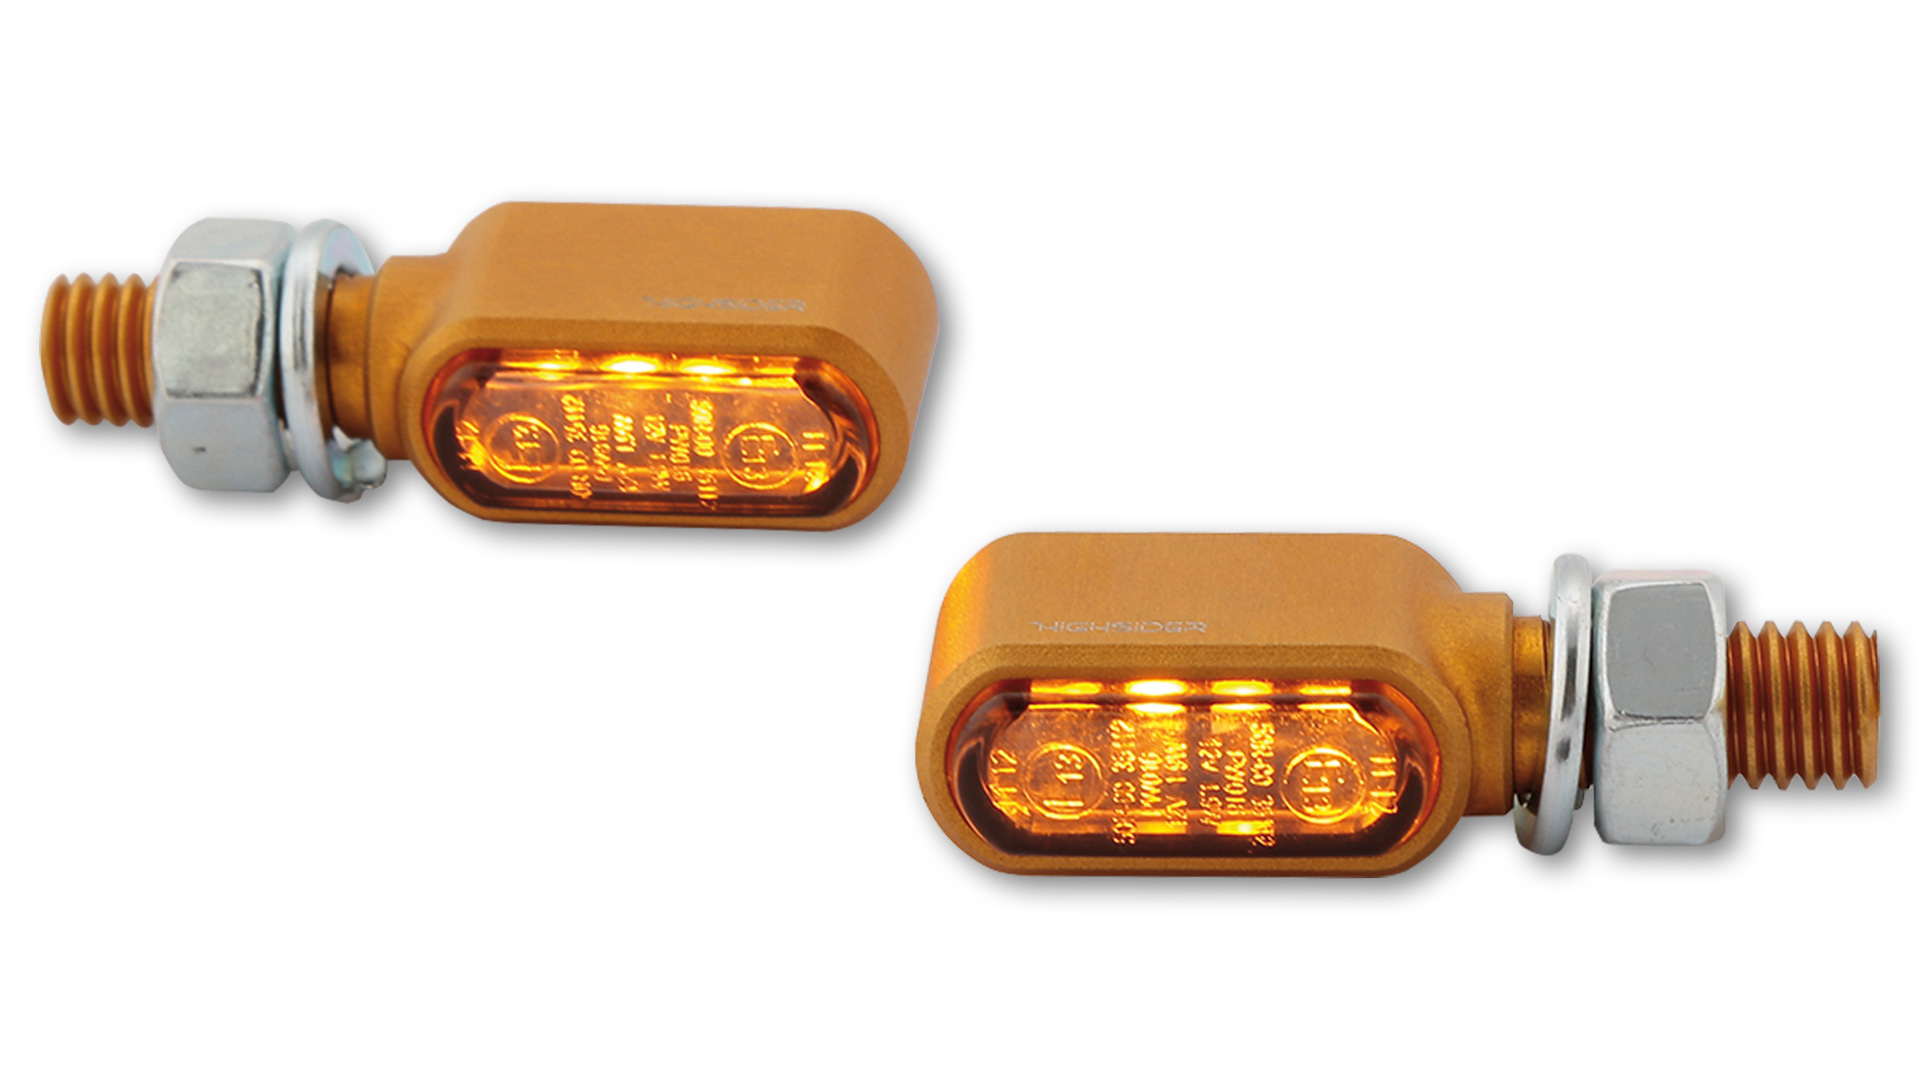 LED Blinker mit getöntem Glas, E-geprüft, Paar, in verschiedenen Farben erhältlich.&ltbr&gt&ltbr&gt